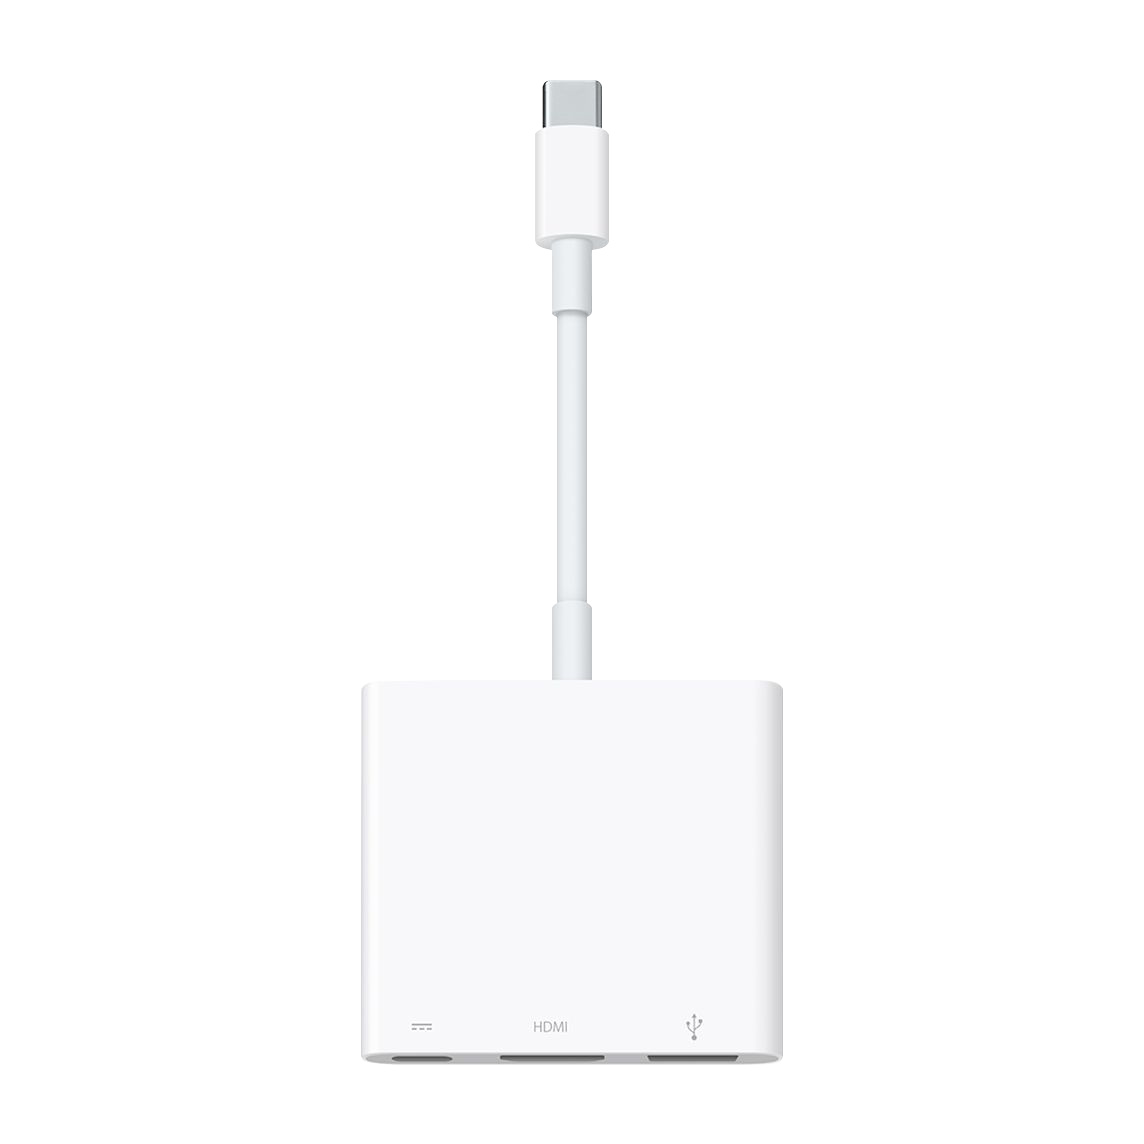 Picture of Apple USB-C Digital AV Multiport Adapter HDMI/USB/USB-C